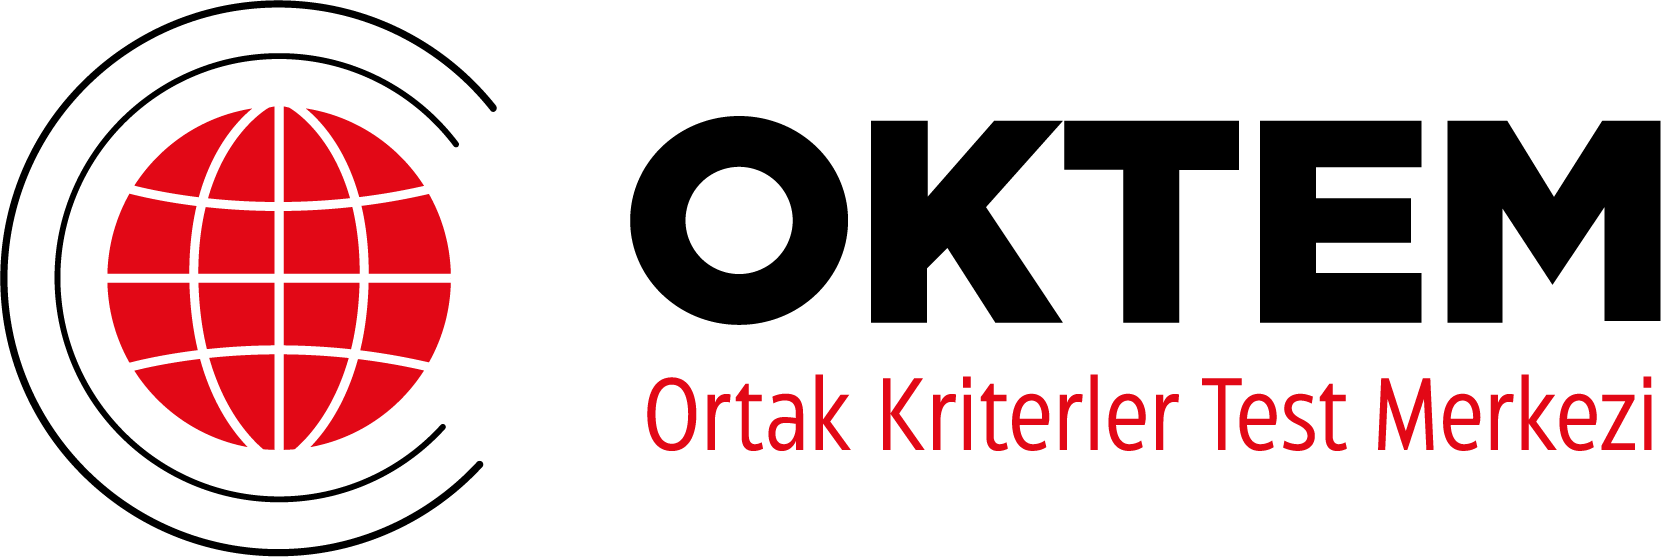 oktem-logo-1@4x